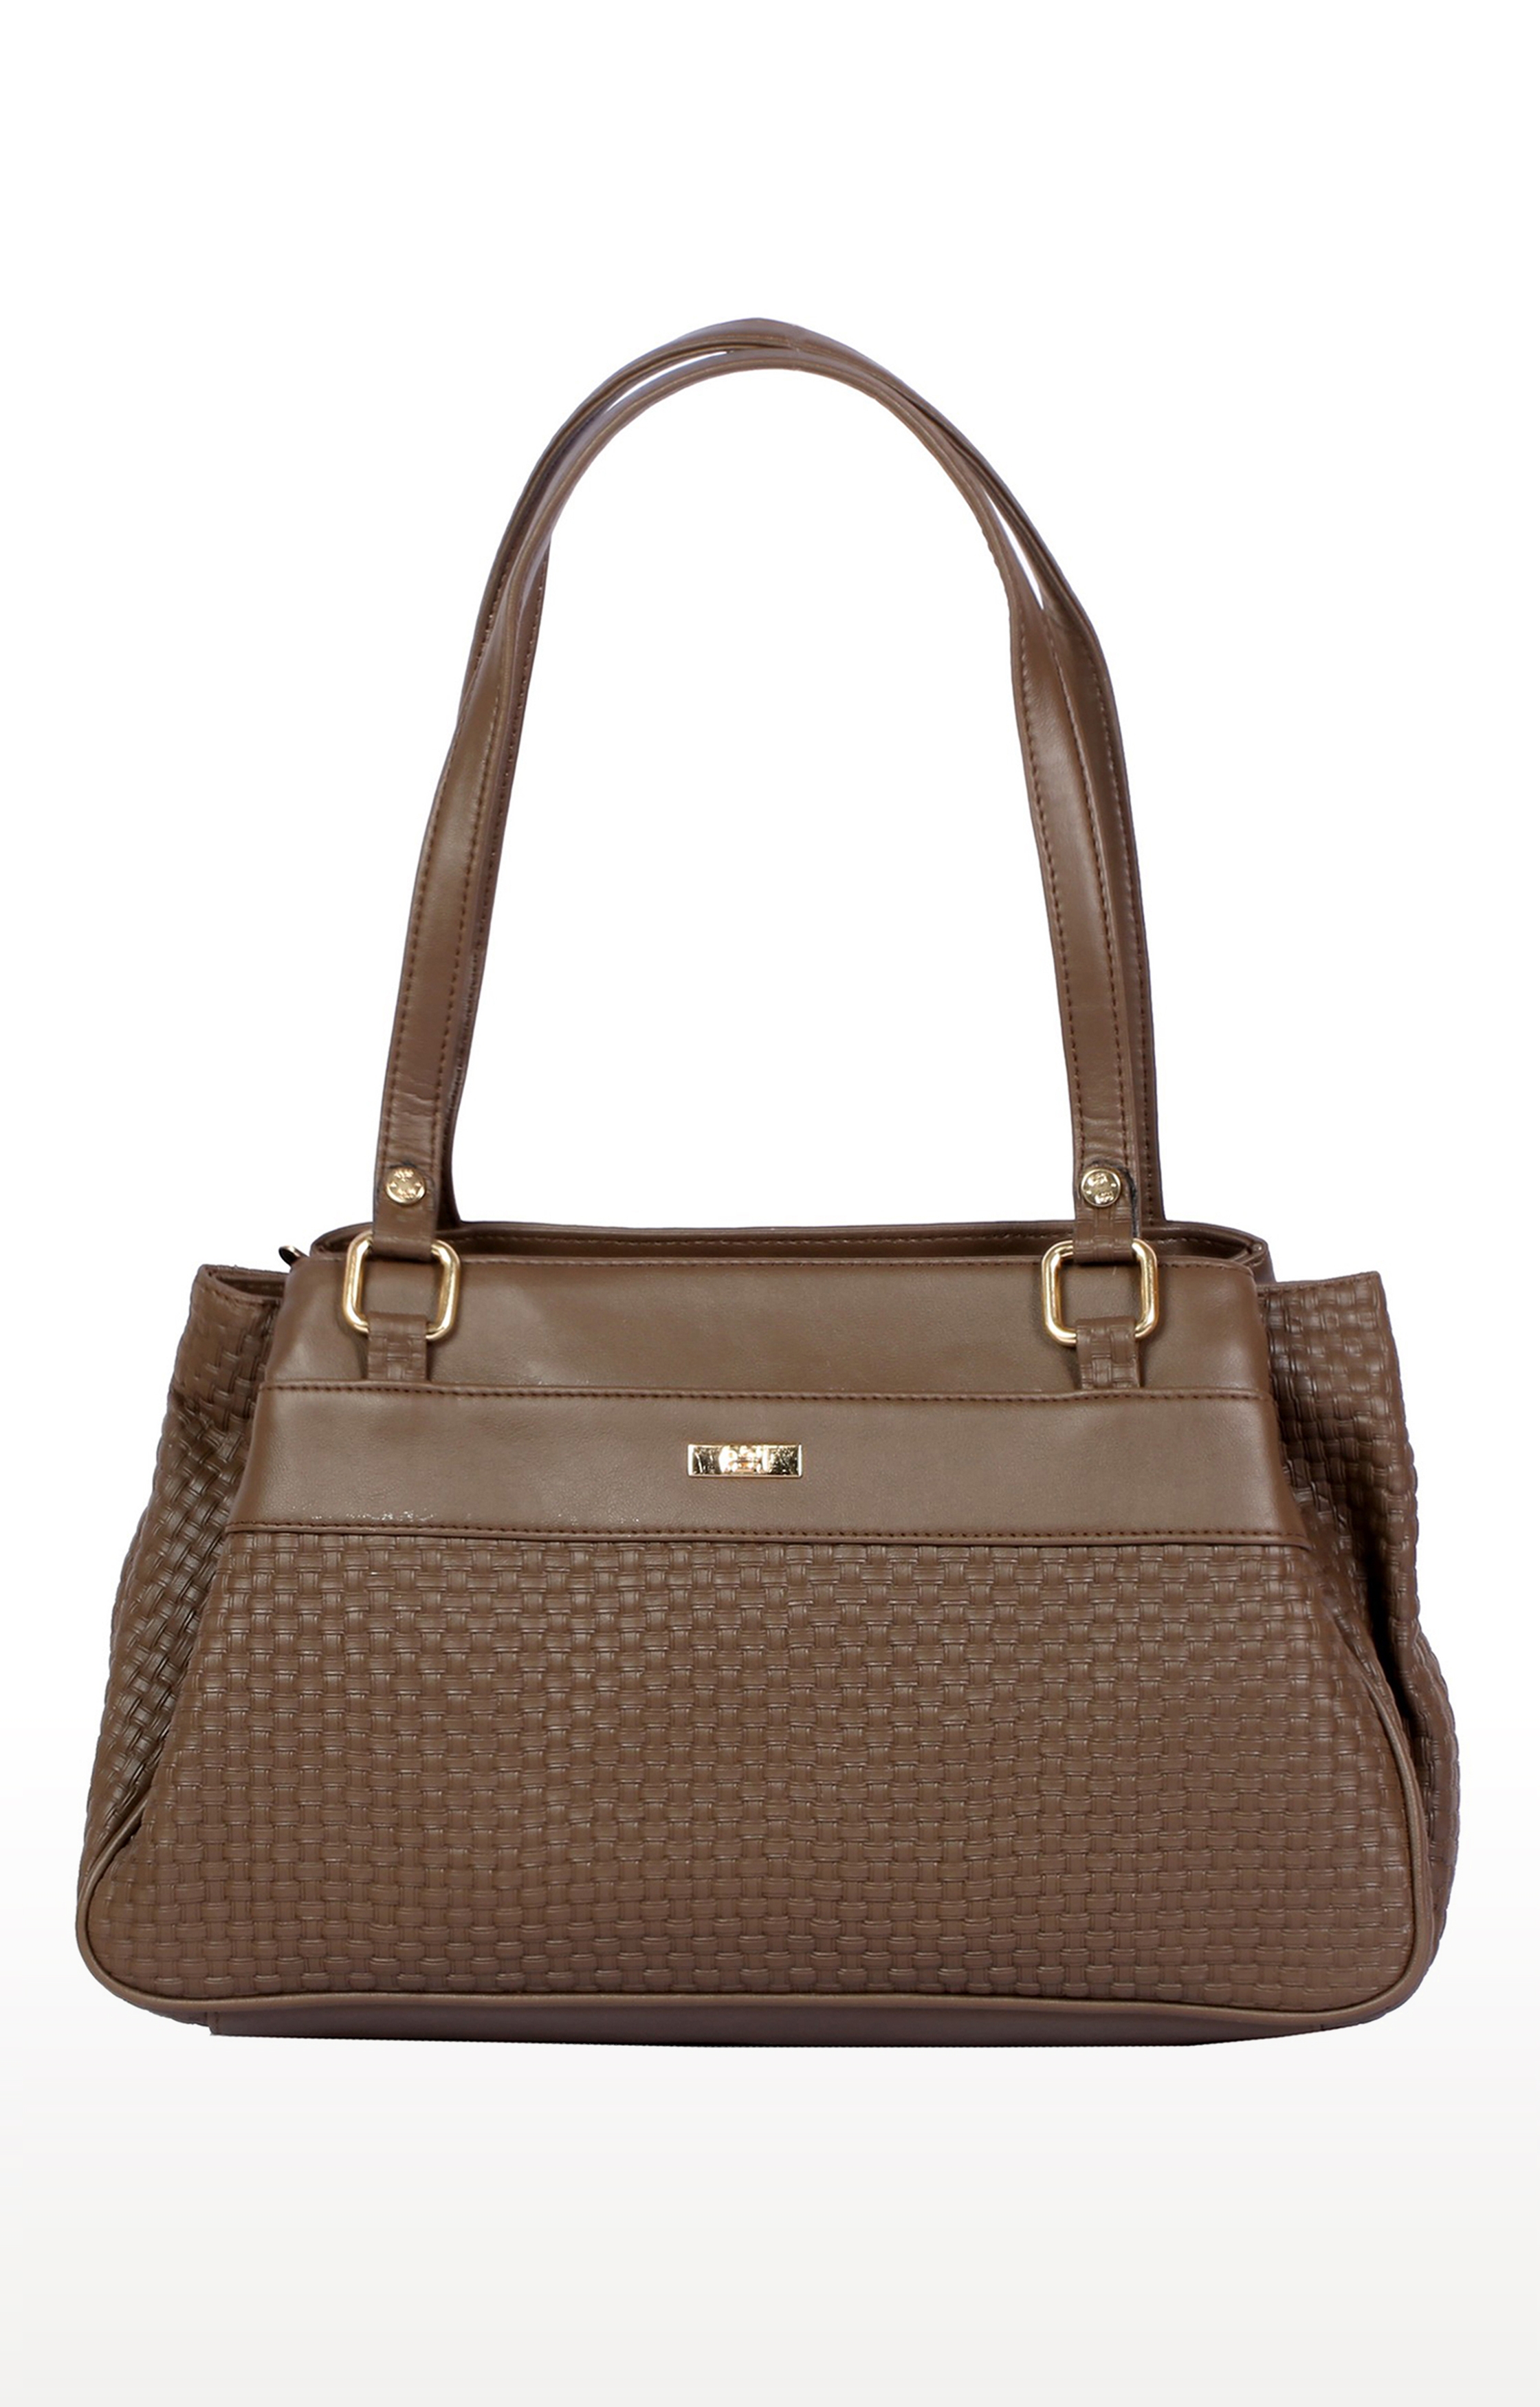 Lely's Women's Brown Handbag